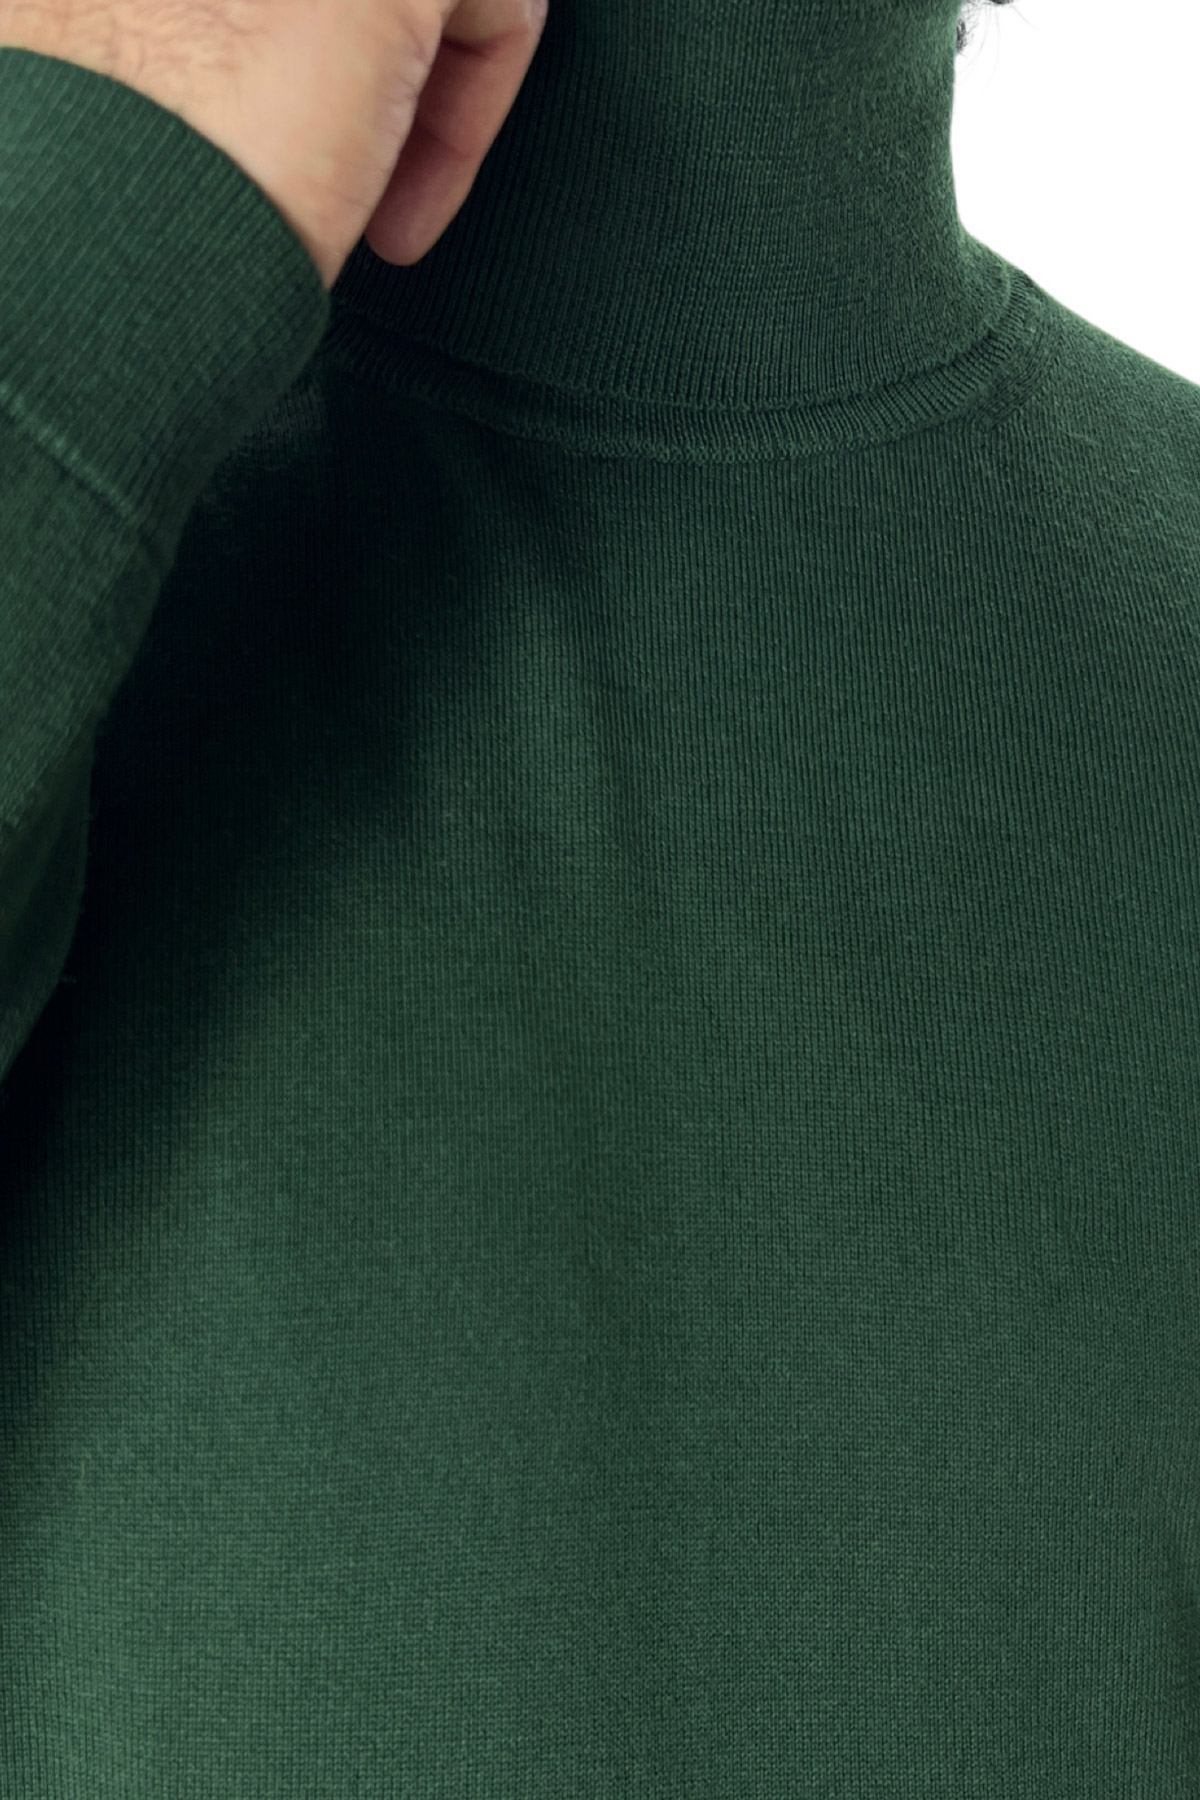 Maglione collo alto uomo verde bottiglia in lana merinos slim fit made in italy tinta unita